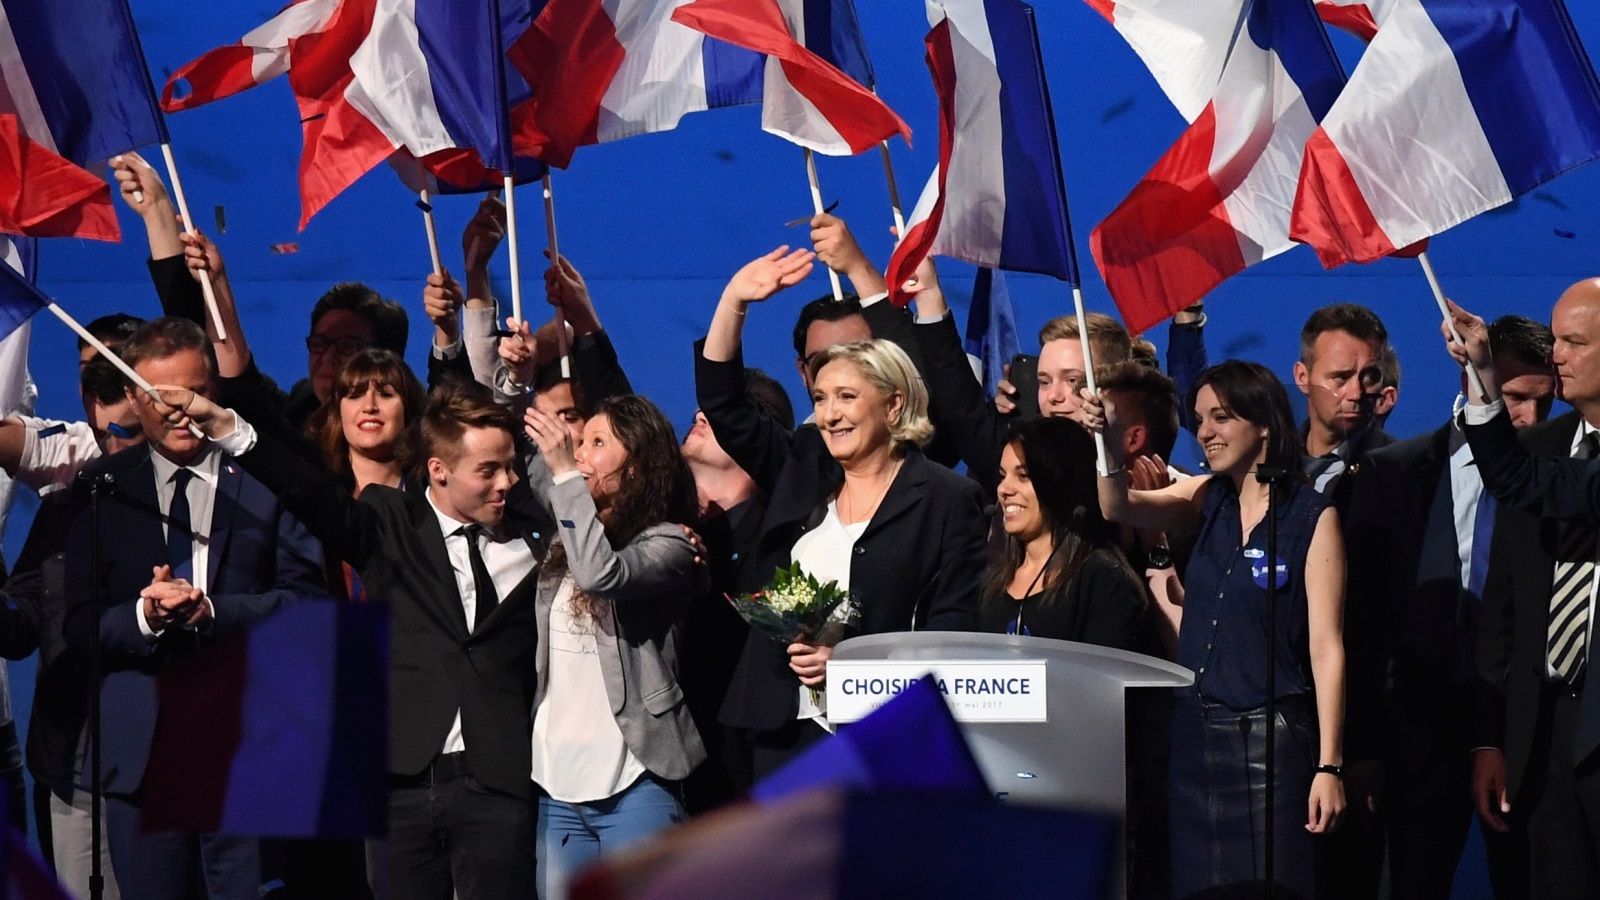 اليمين المتطرف تعرض لهزيمة في فرنسا لكنه يترسخ بقوة في المشهد السياسي (غيتي إيميجز)